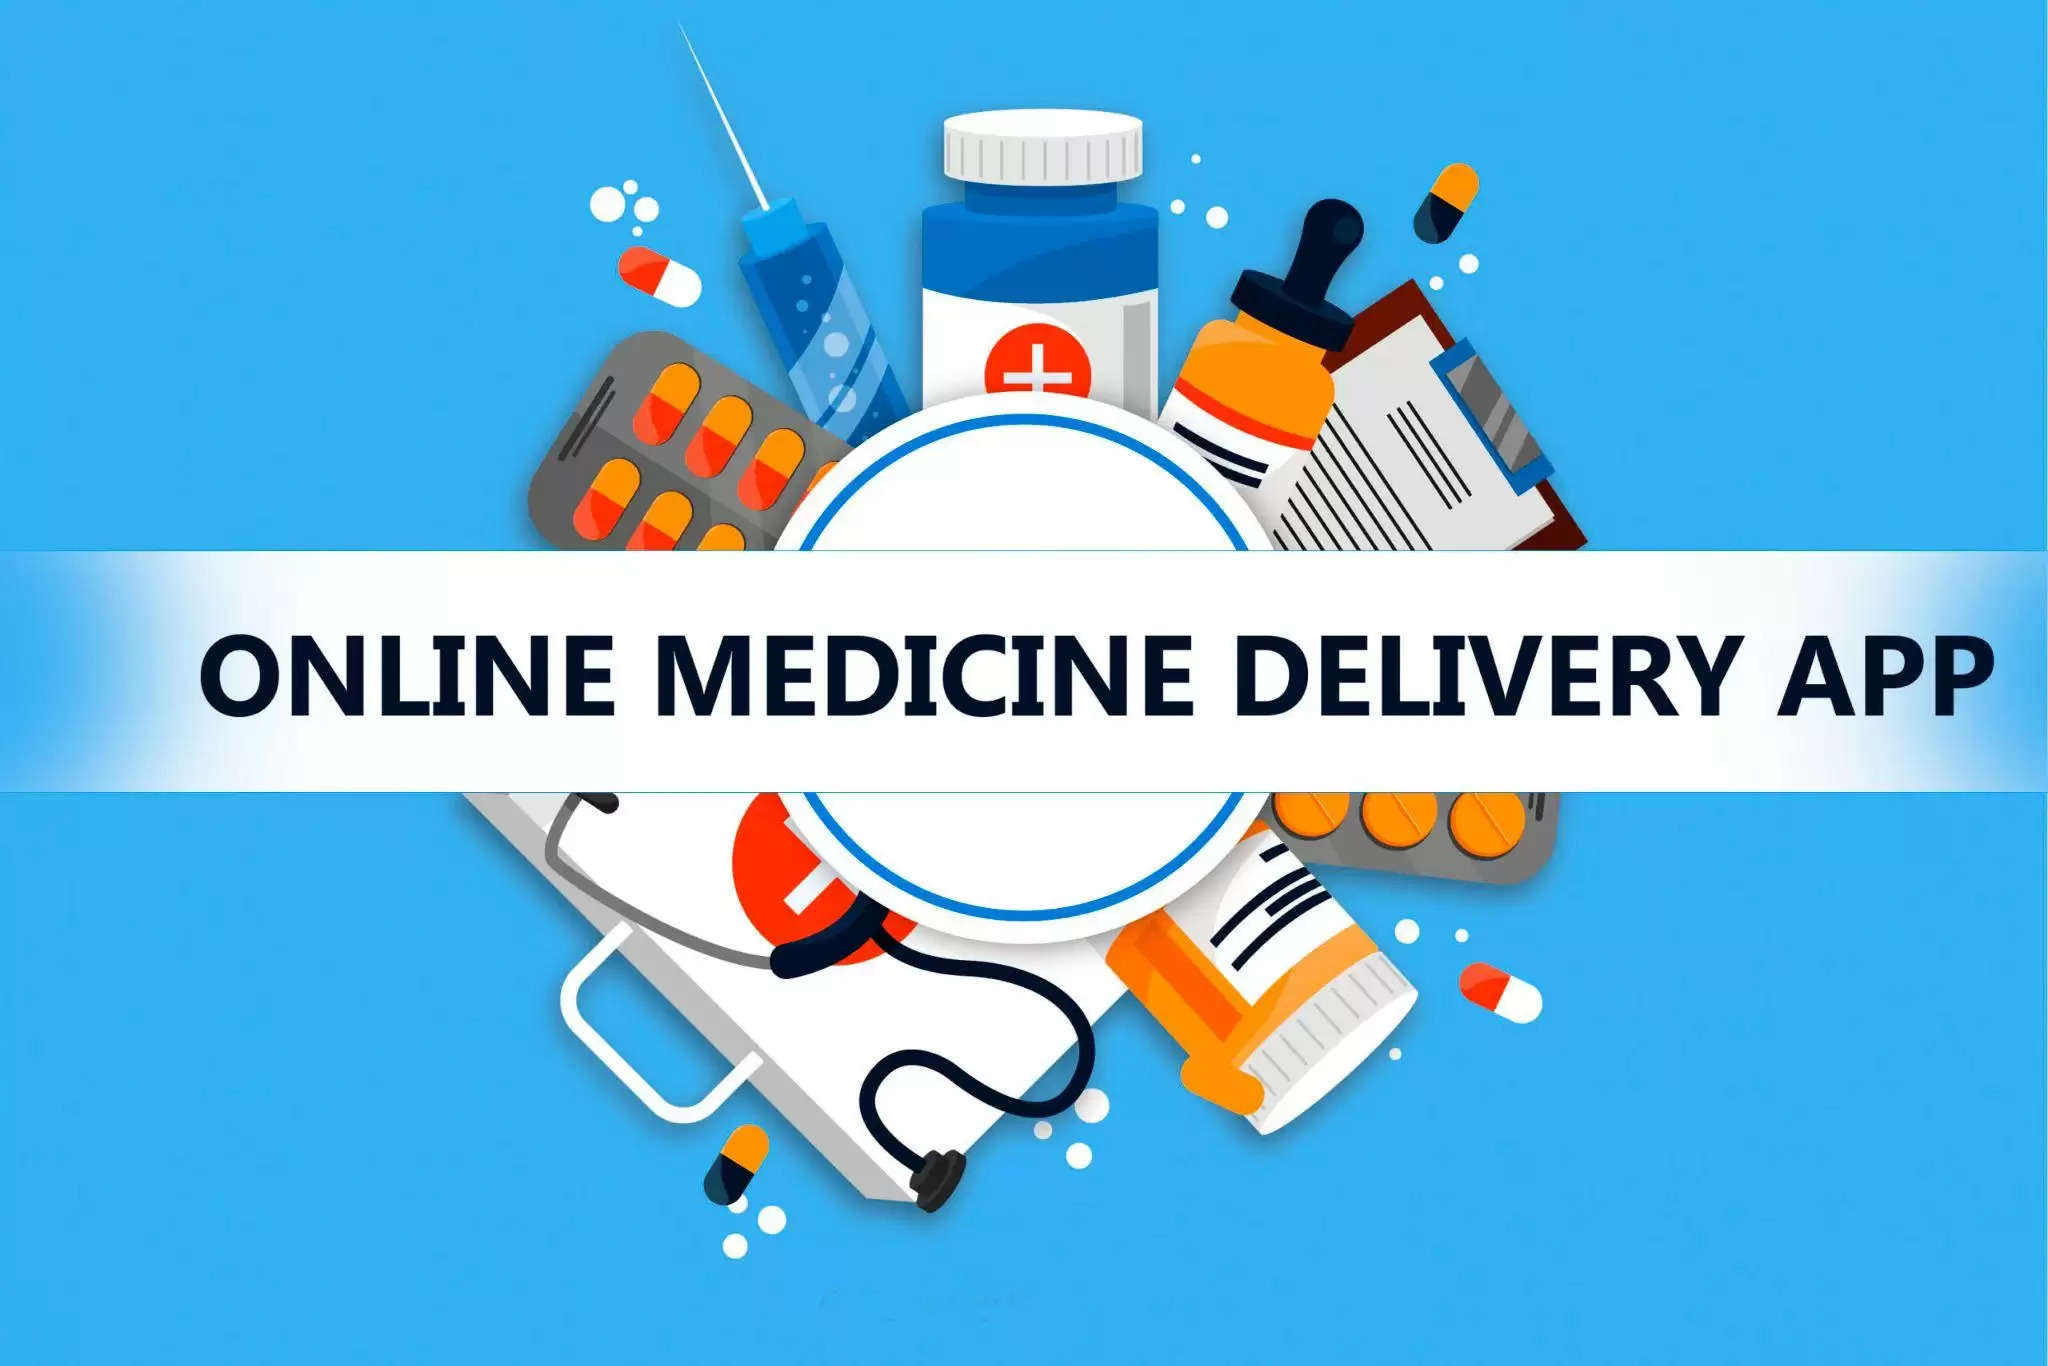 order medicine online best apps to order online medicine in india order online medicine in udaipur order online medicine anywhere in india